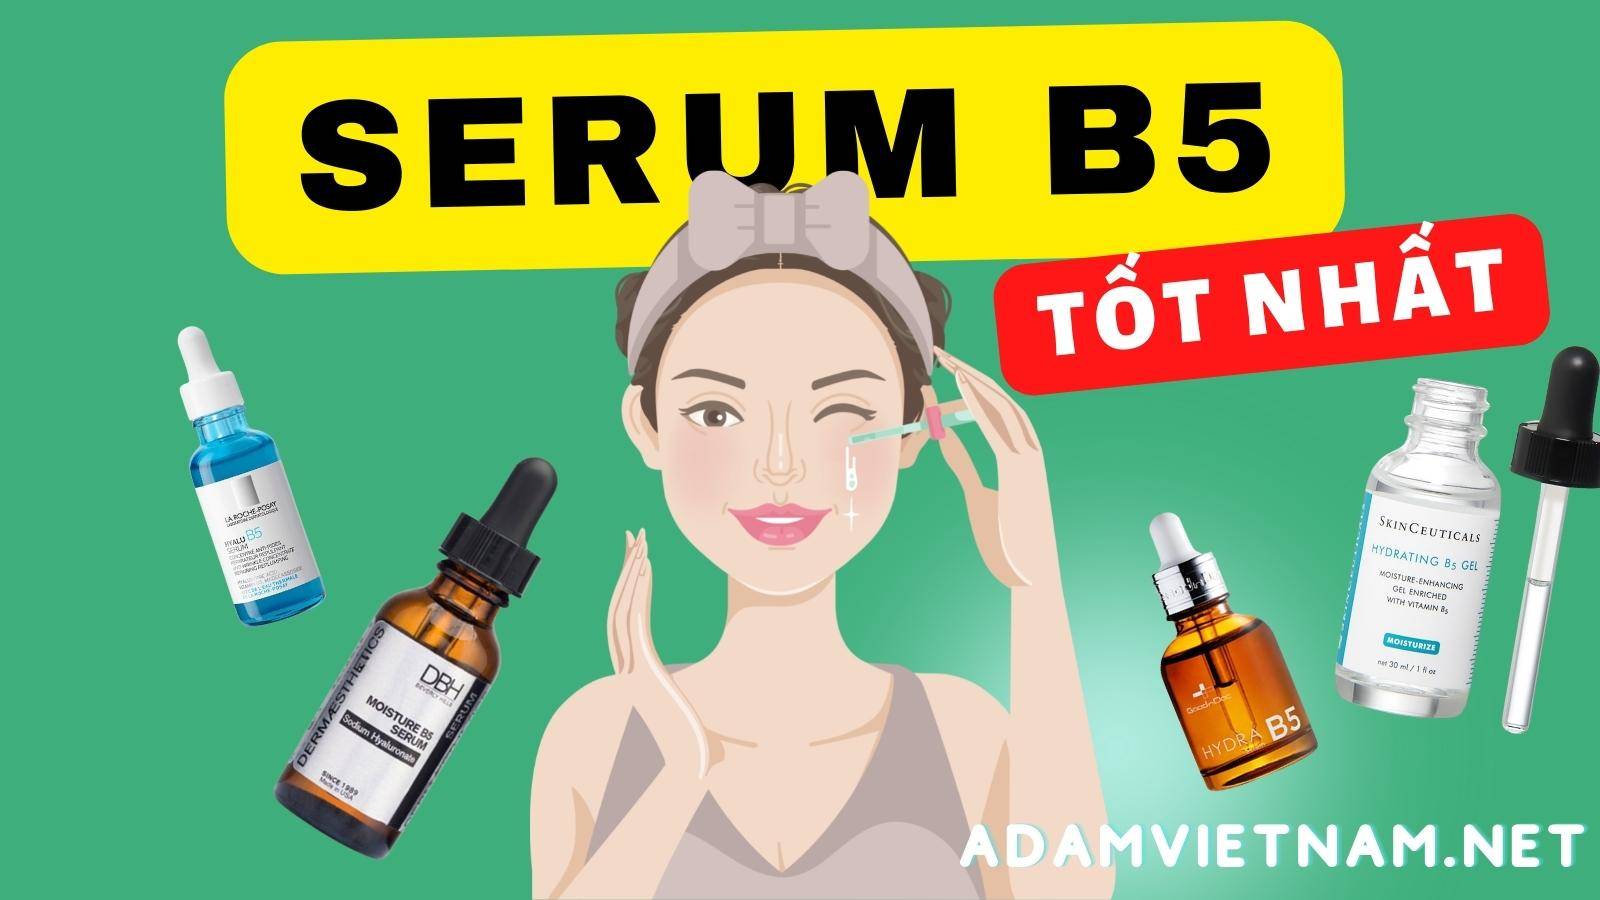 Serum B5